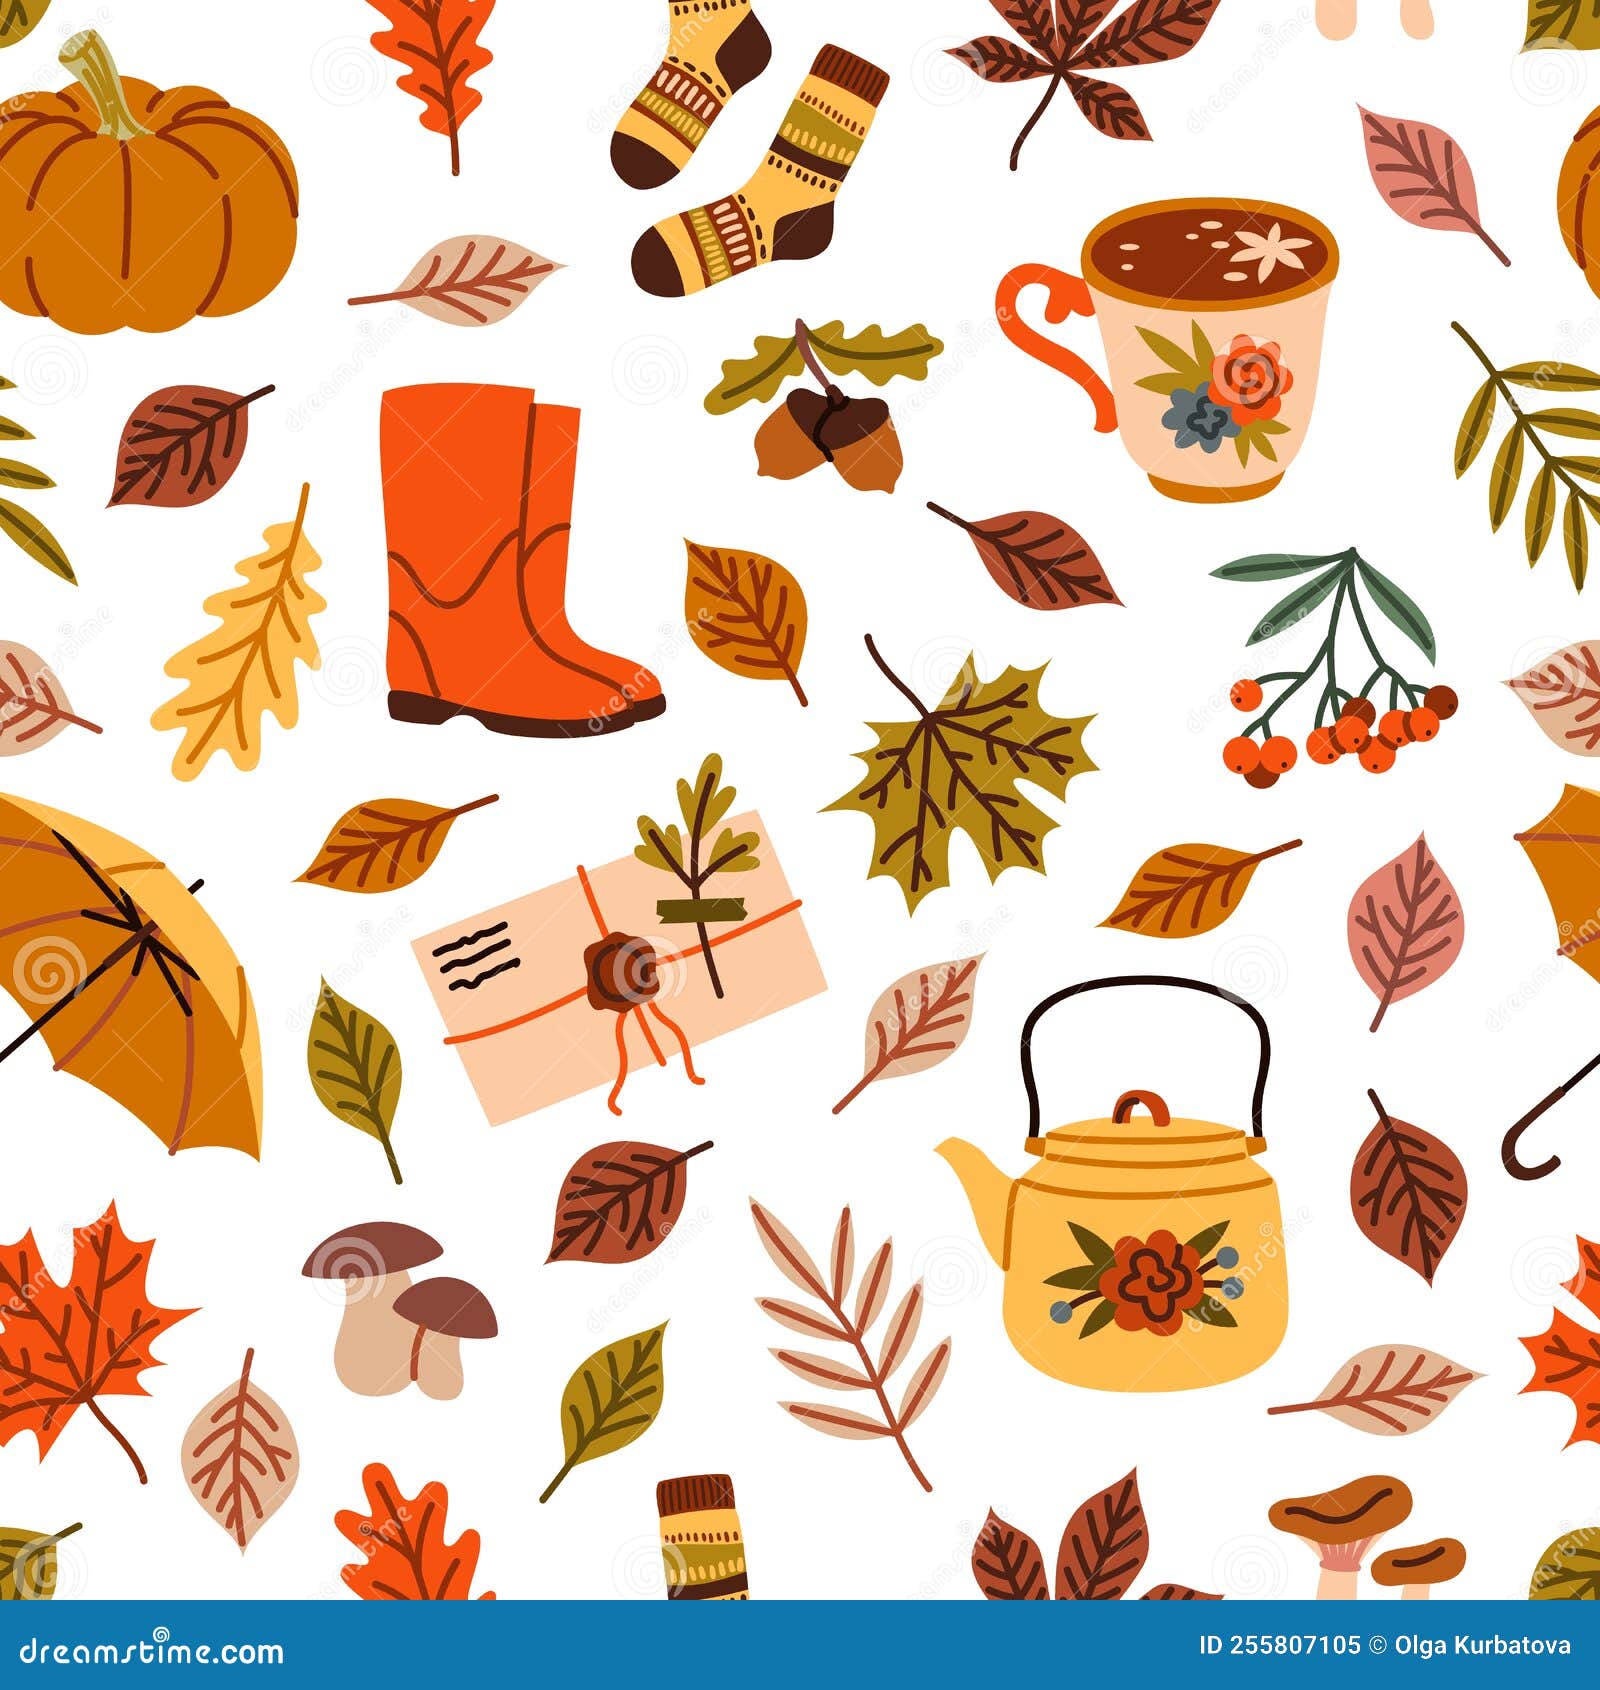 Cozy Fall Foliage Seamless Pattern - Graphics